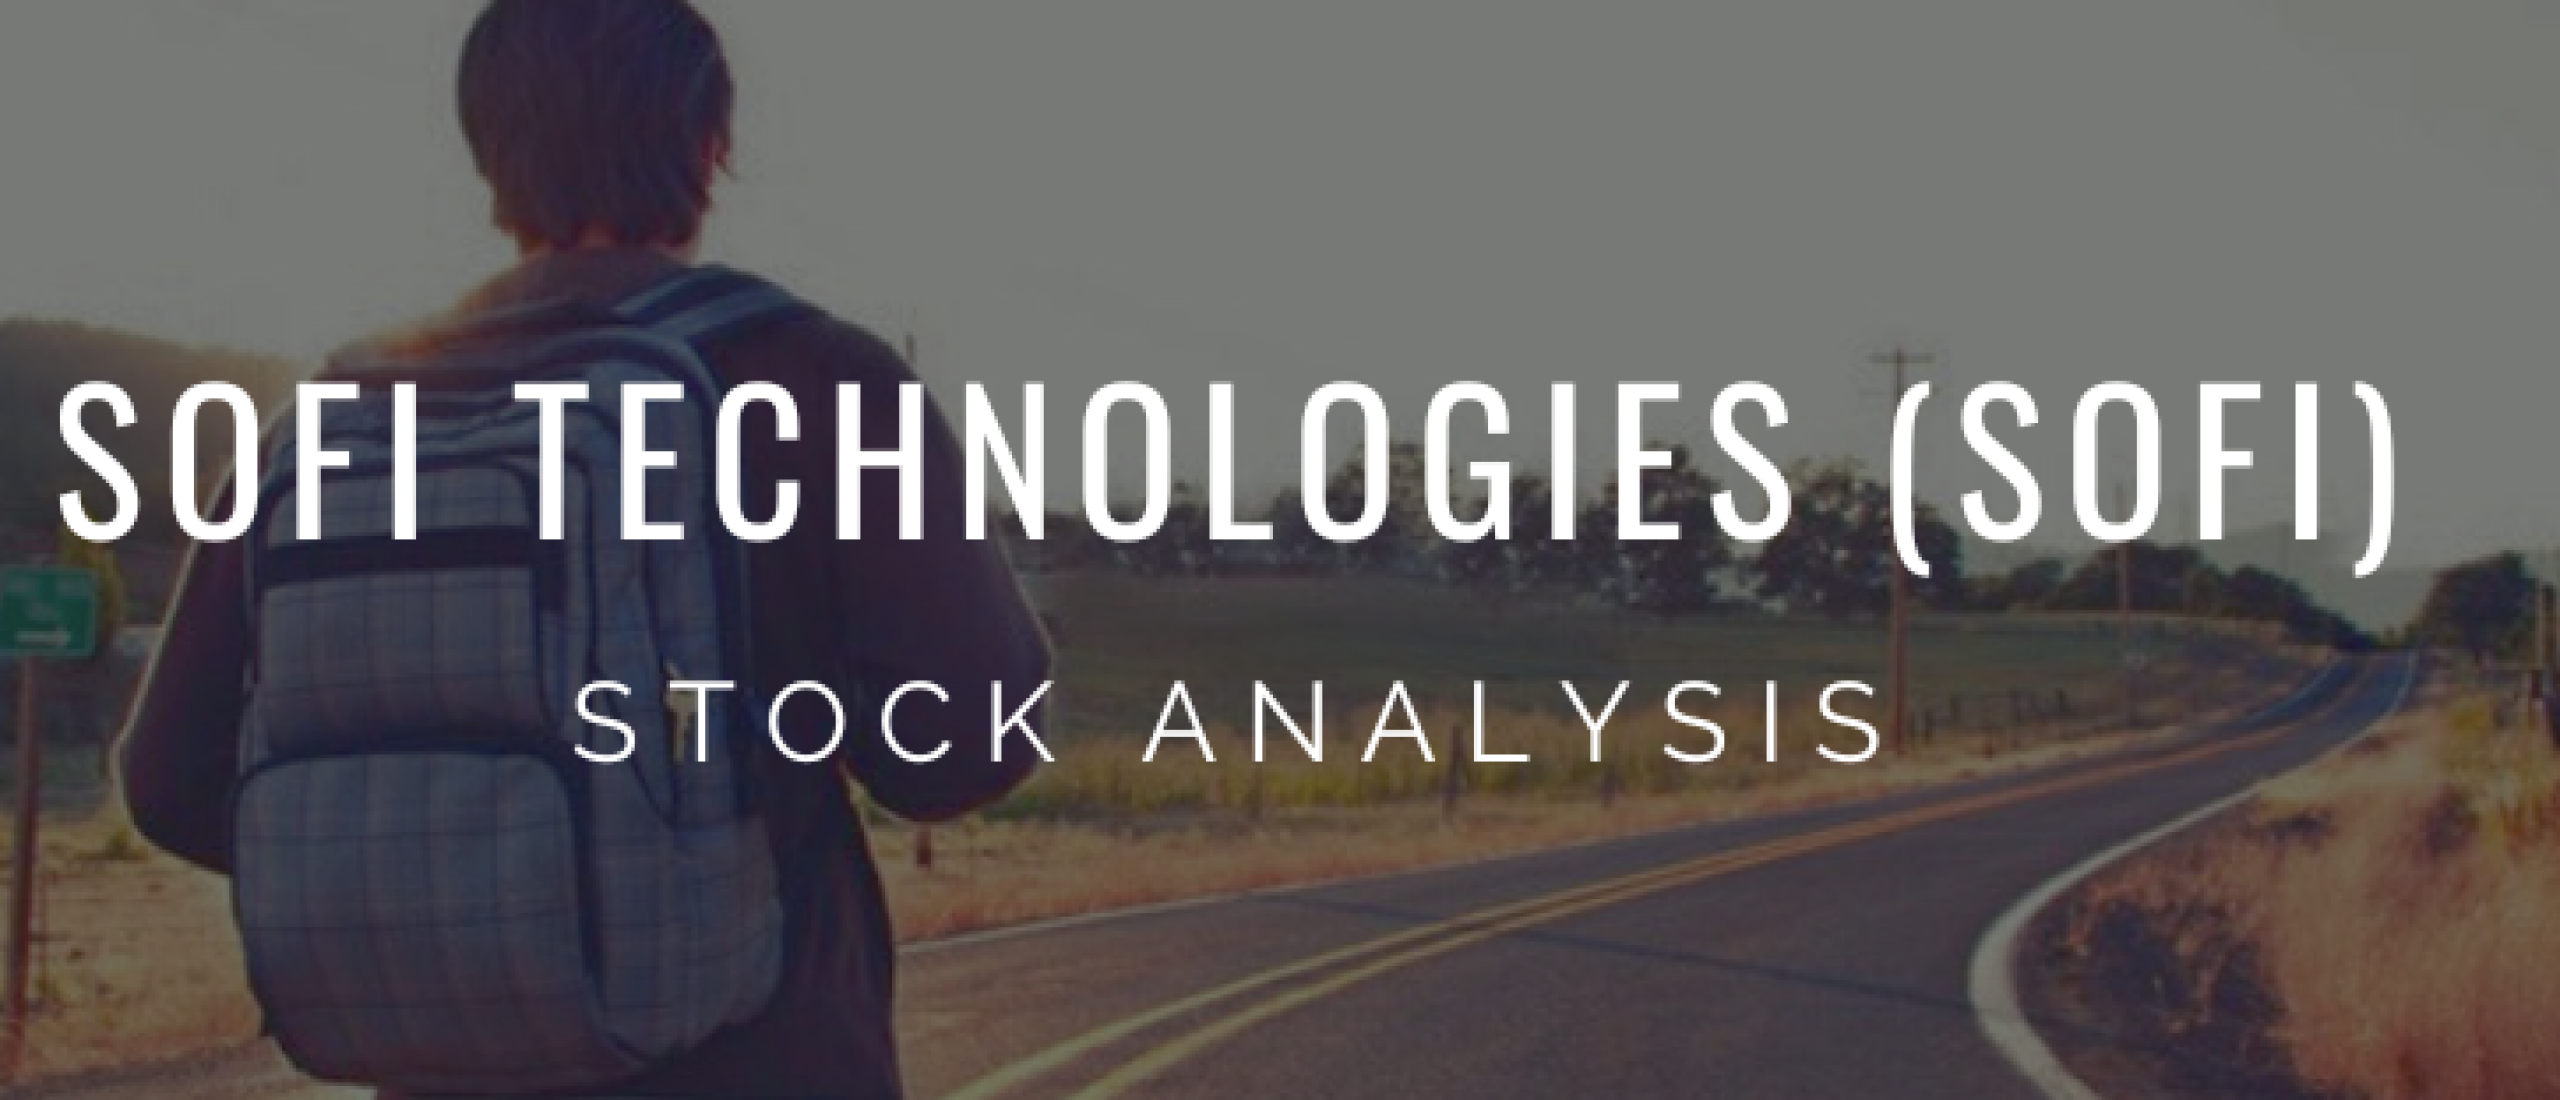 sofi-technologies-sofi-stock-analysis